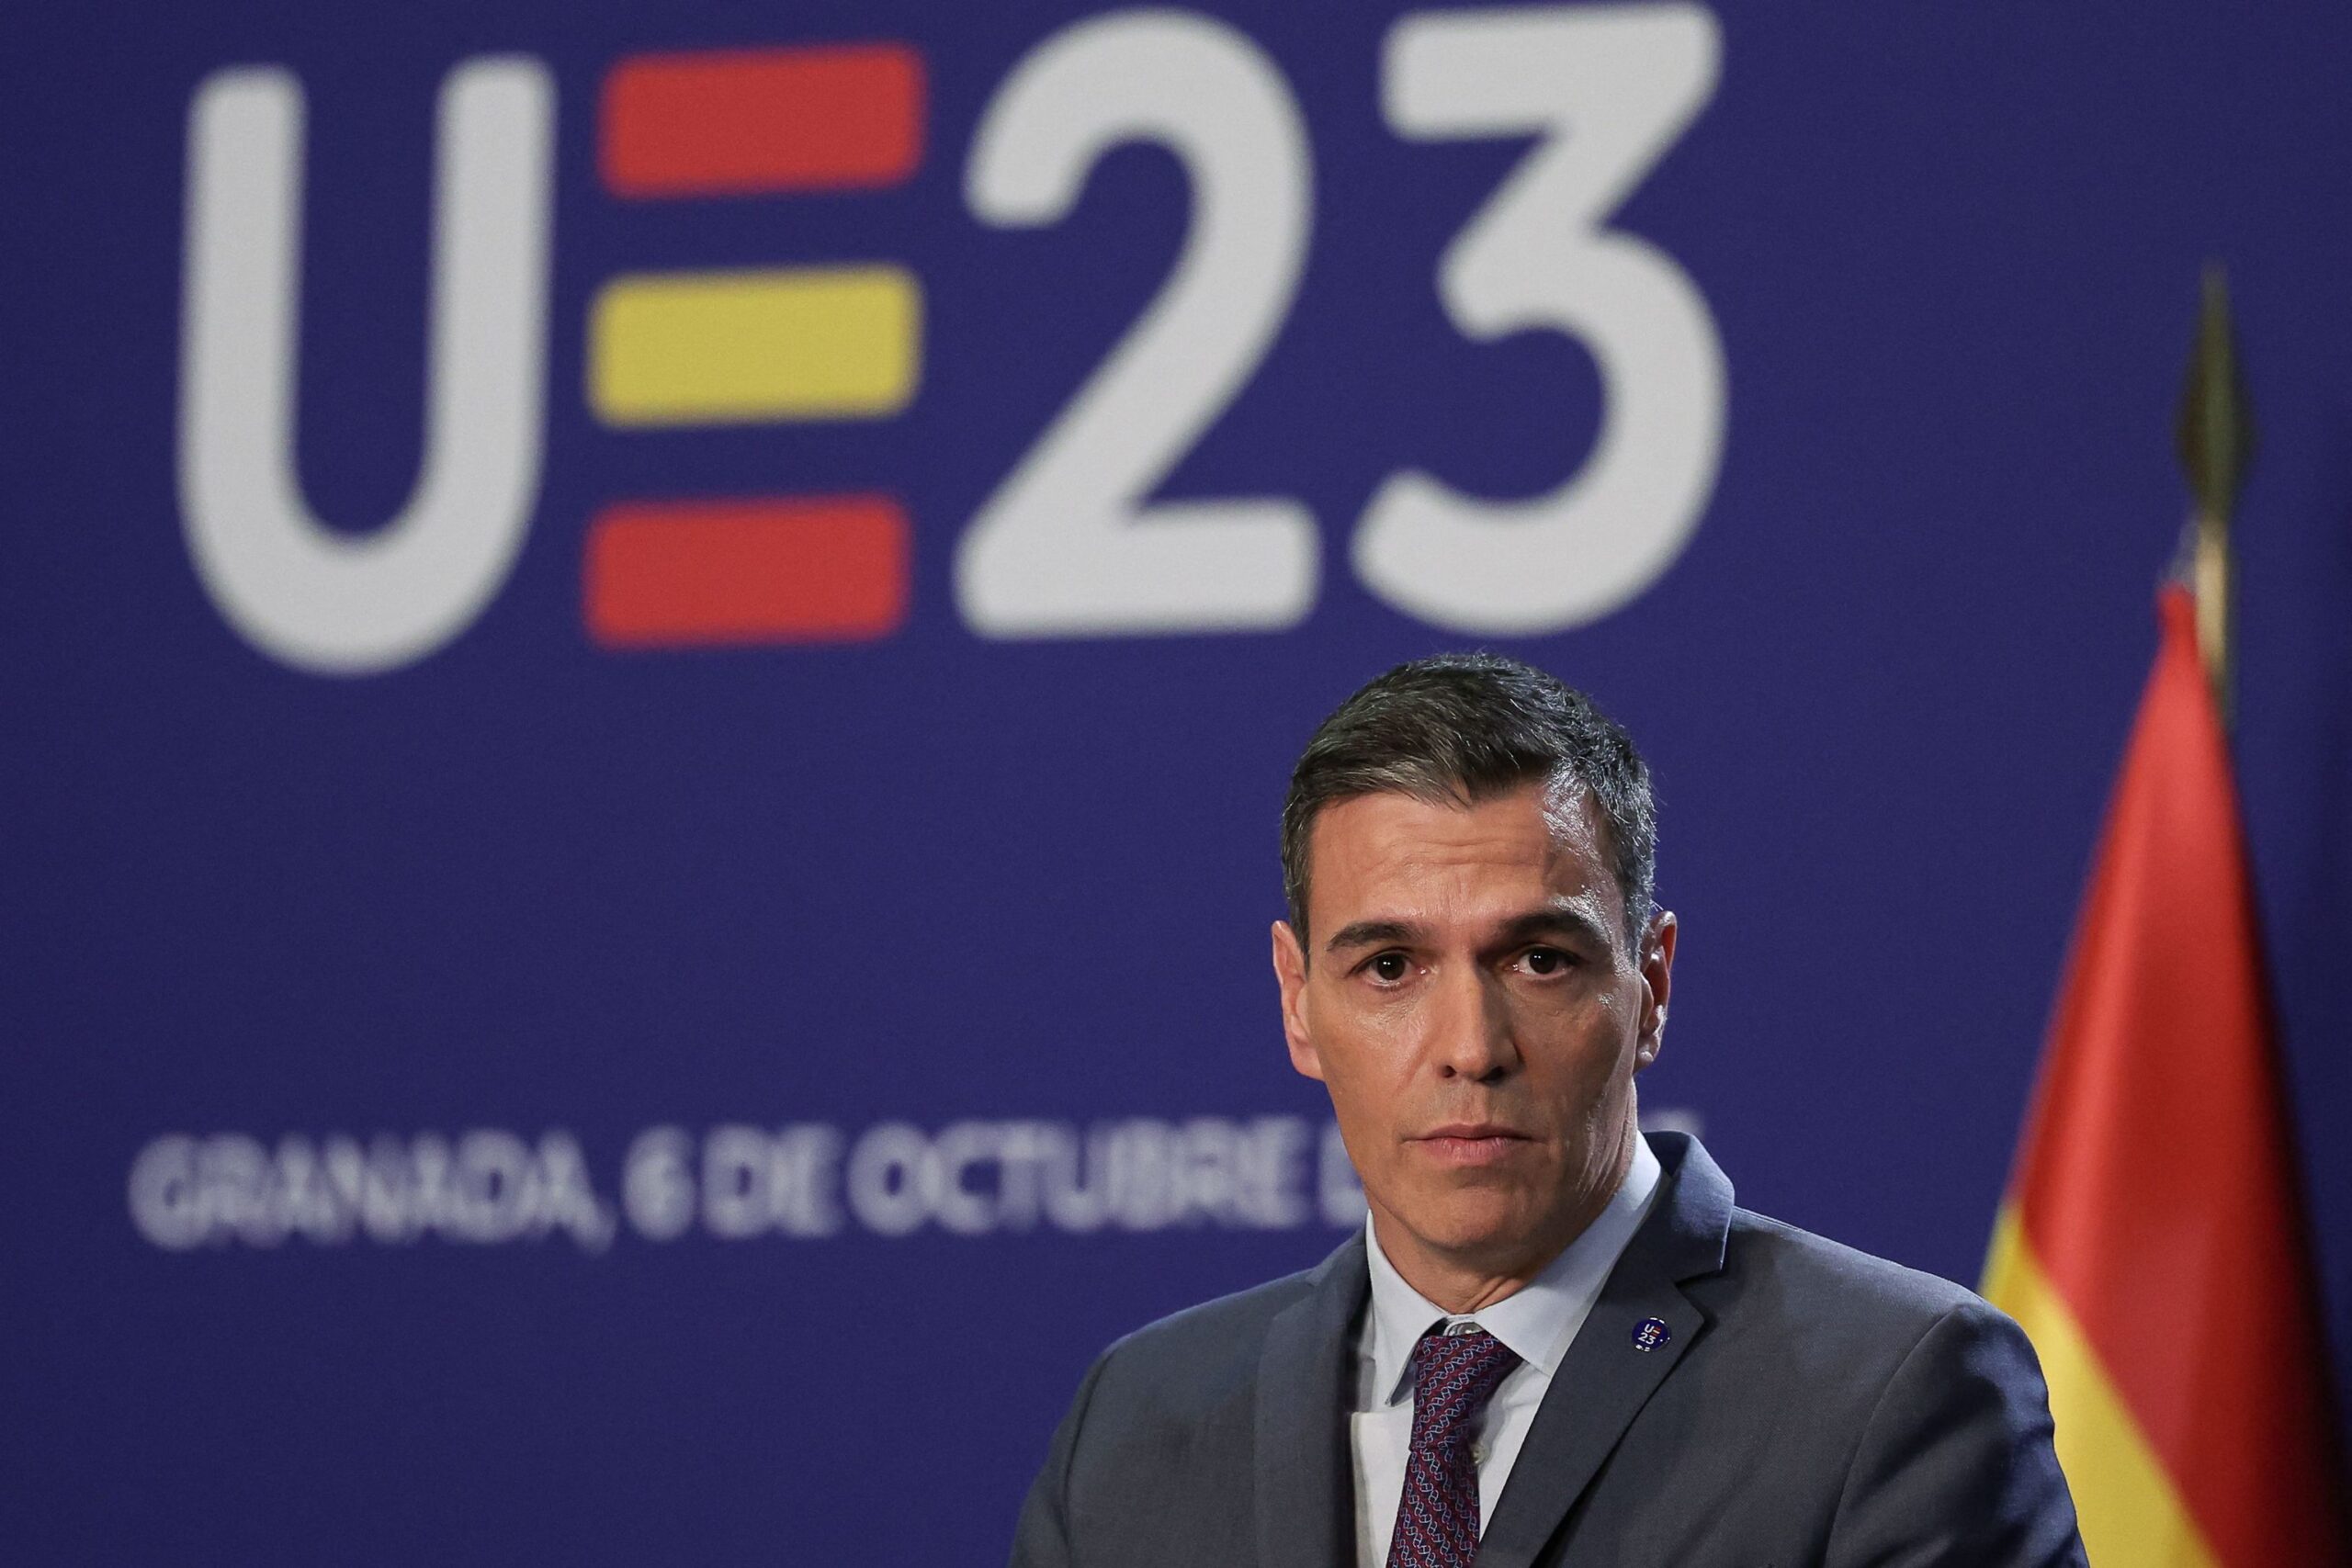 Sánchez nel mirino delle fake news della destra e i socialisti si mobilitano in suo favore